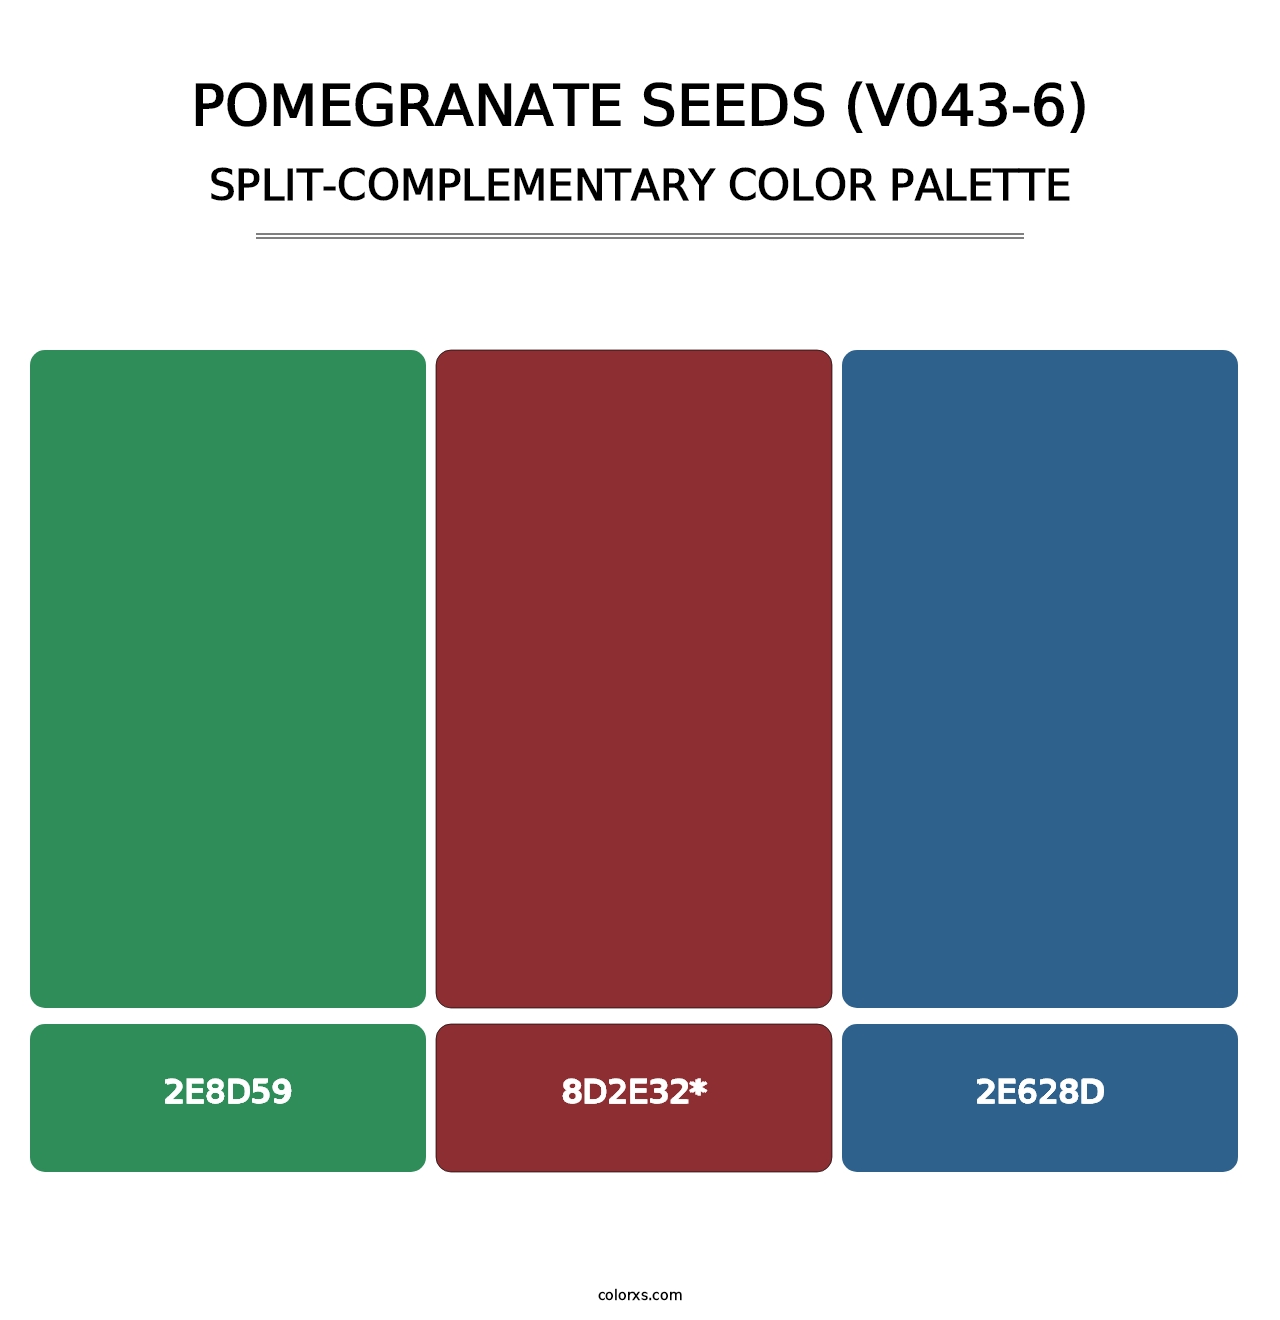 Pomegranate Seeds (V043-6) - Split-Complementary Color Palette